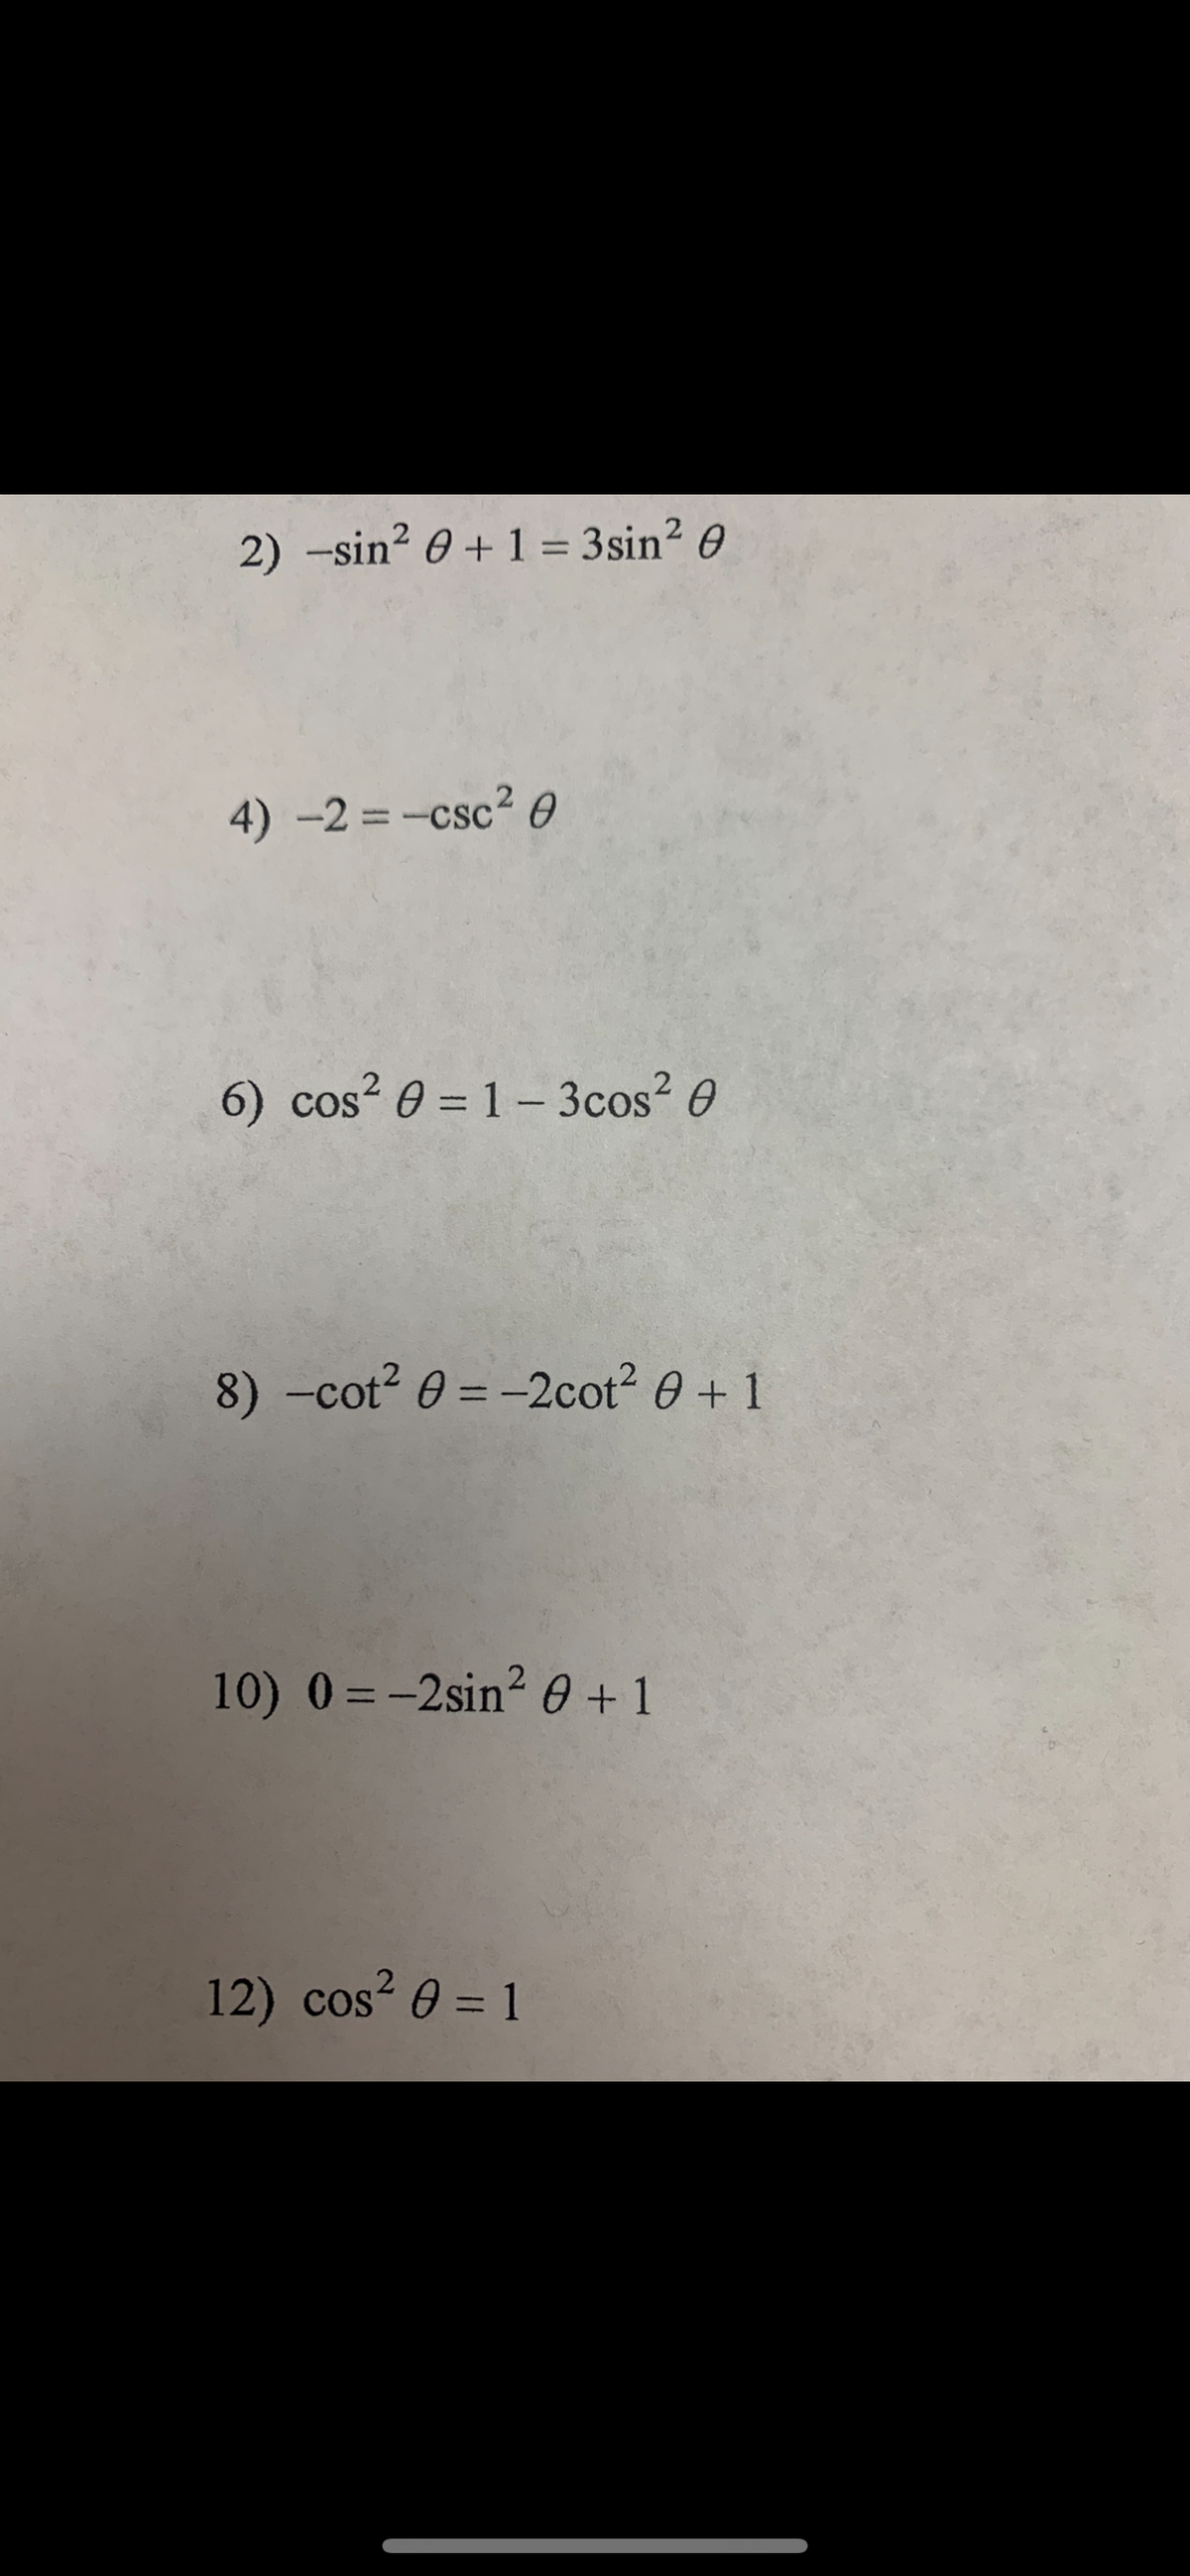 2) -sin? 0 + 1 = 3sin? 0
4) -2 = -csc? 0
6) cos? 0 = 1– 3cos? 0
8) -cot? 0 = -2cot2 0 + 1
%3D
10) 0 = -2sin? 0 +1
12) cos? 0 = 1
%3D
